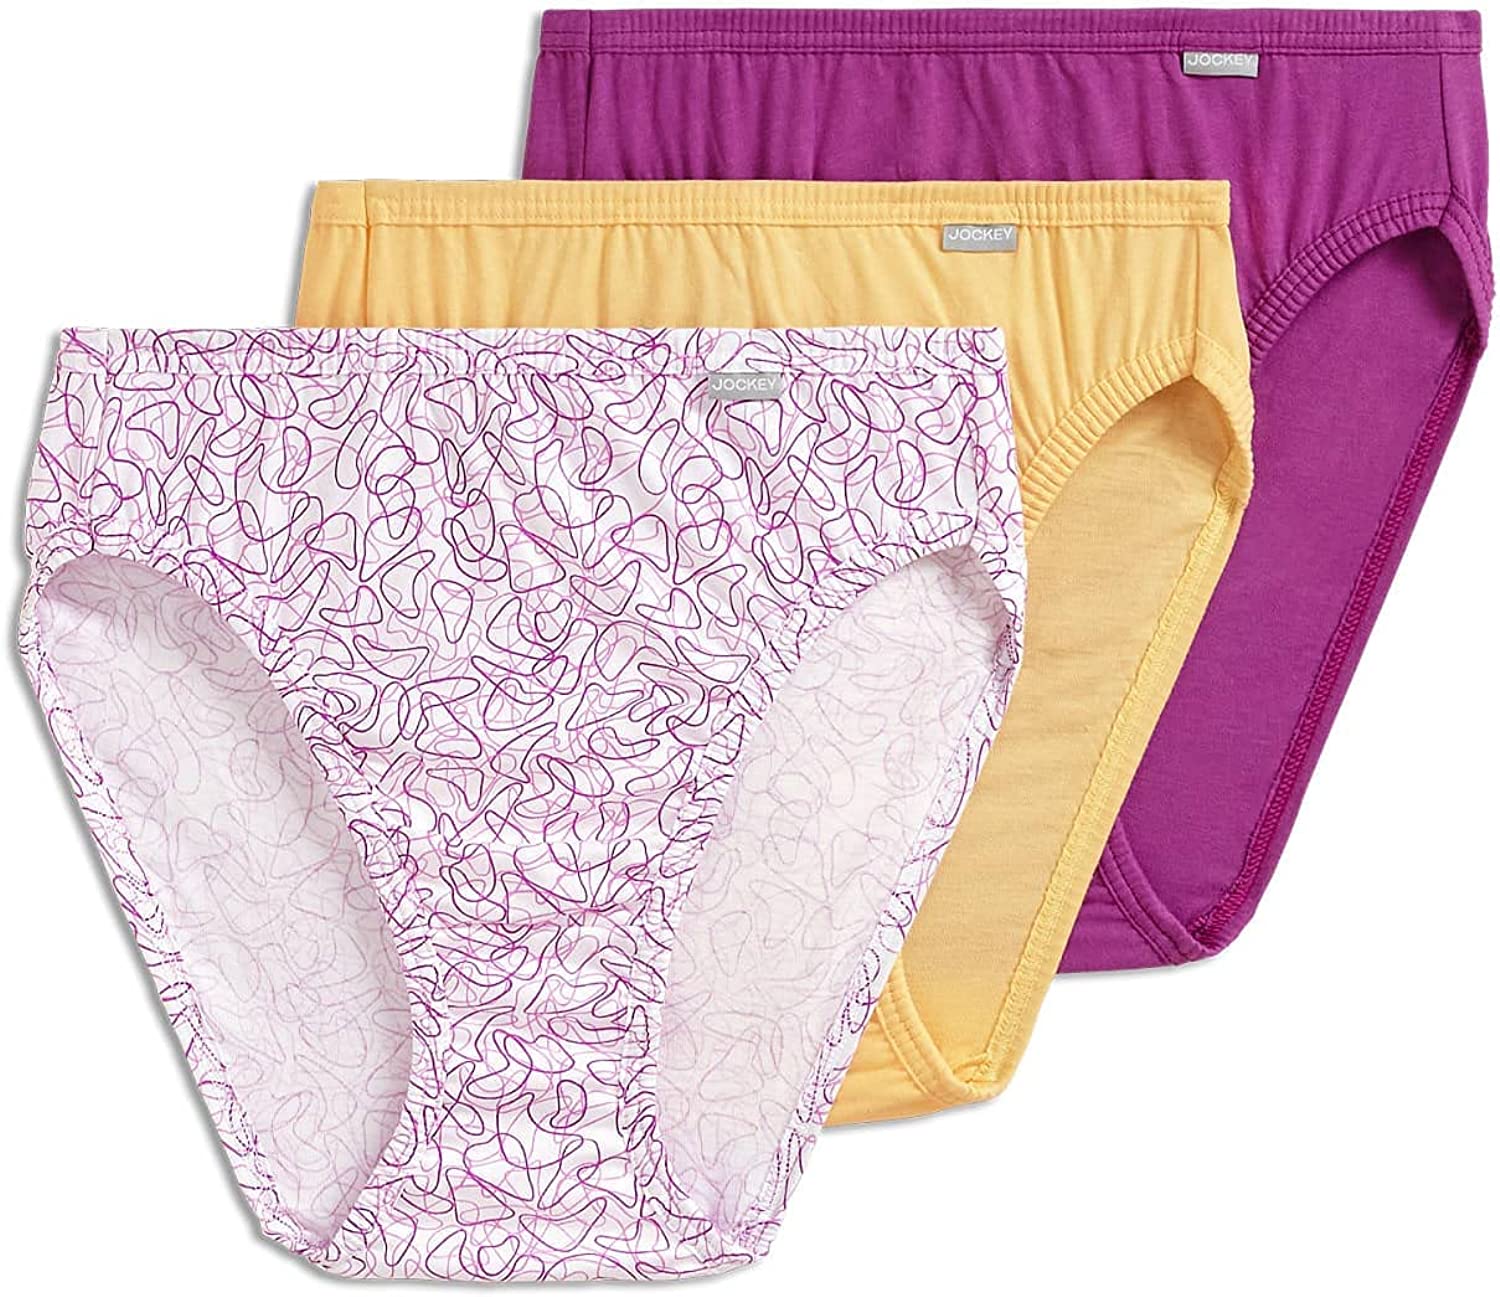 Jockey Women's Underwear Plus Size Elance French Cut - 3 Pack, White, 8 at   Women's Clothing store: Briefs Underwear